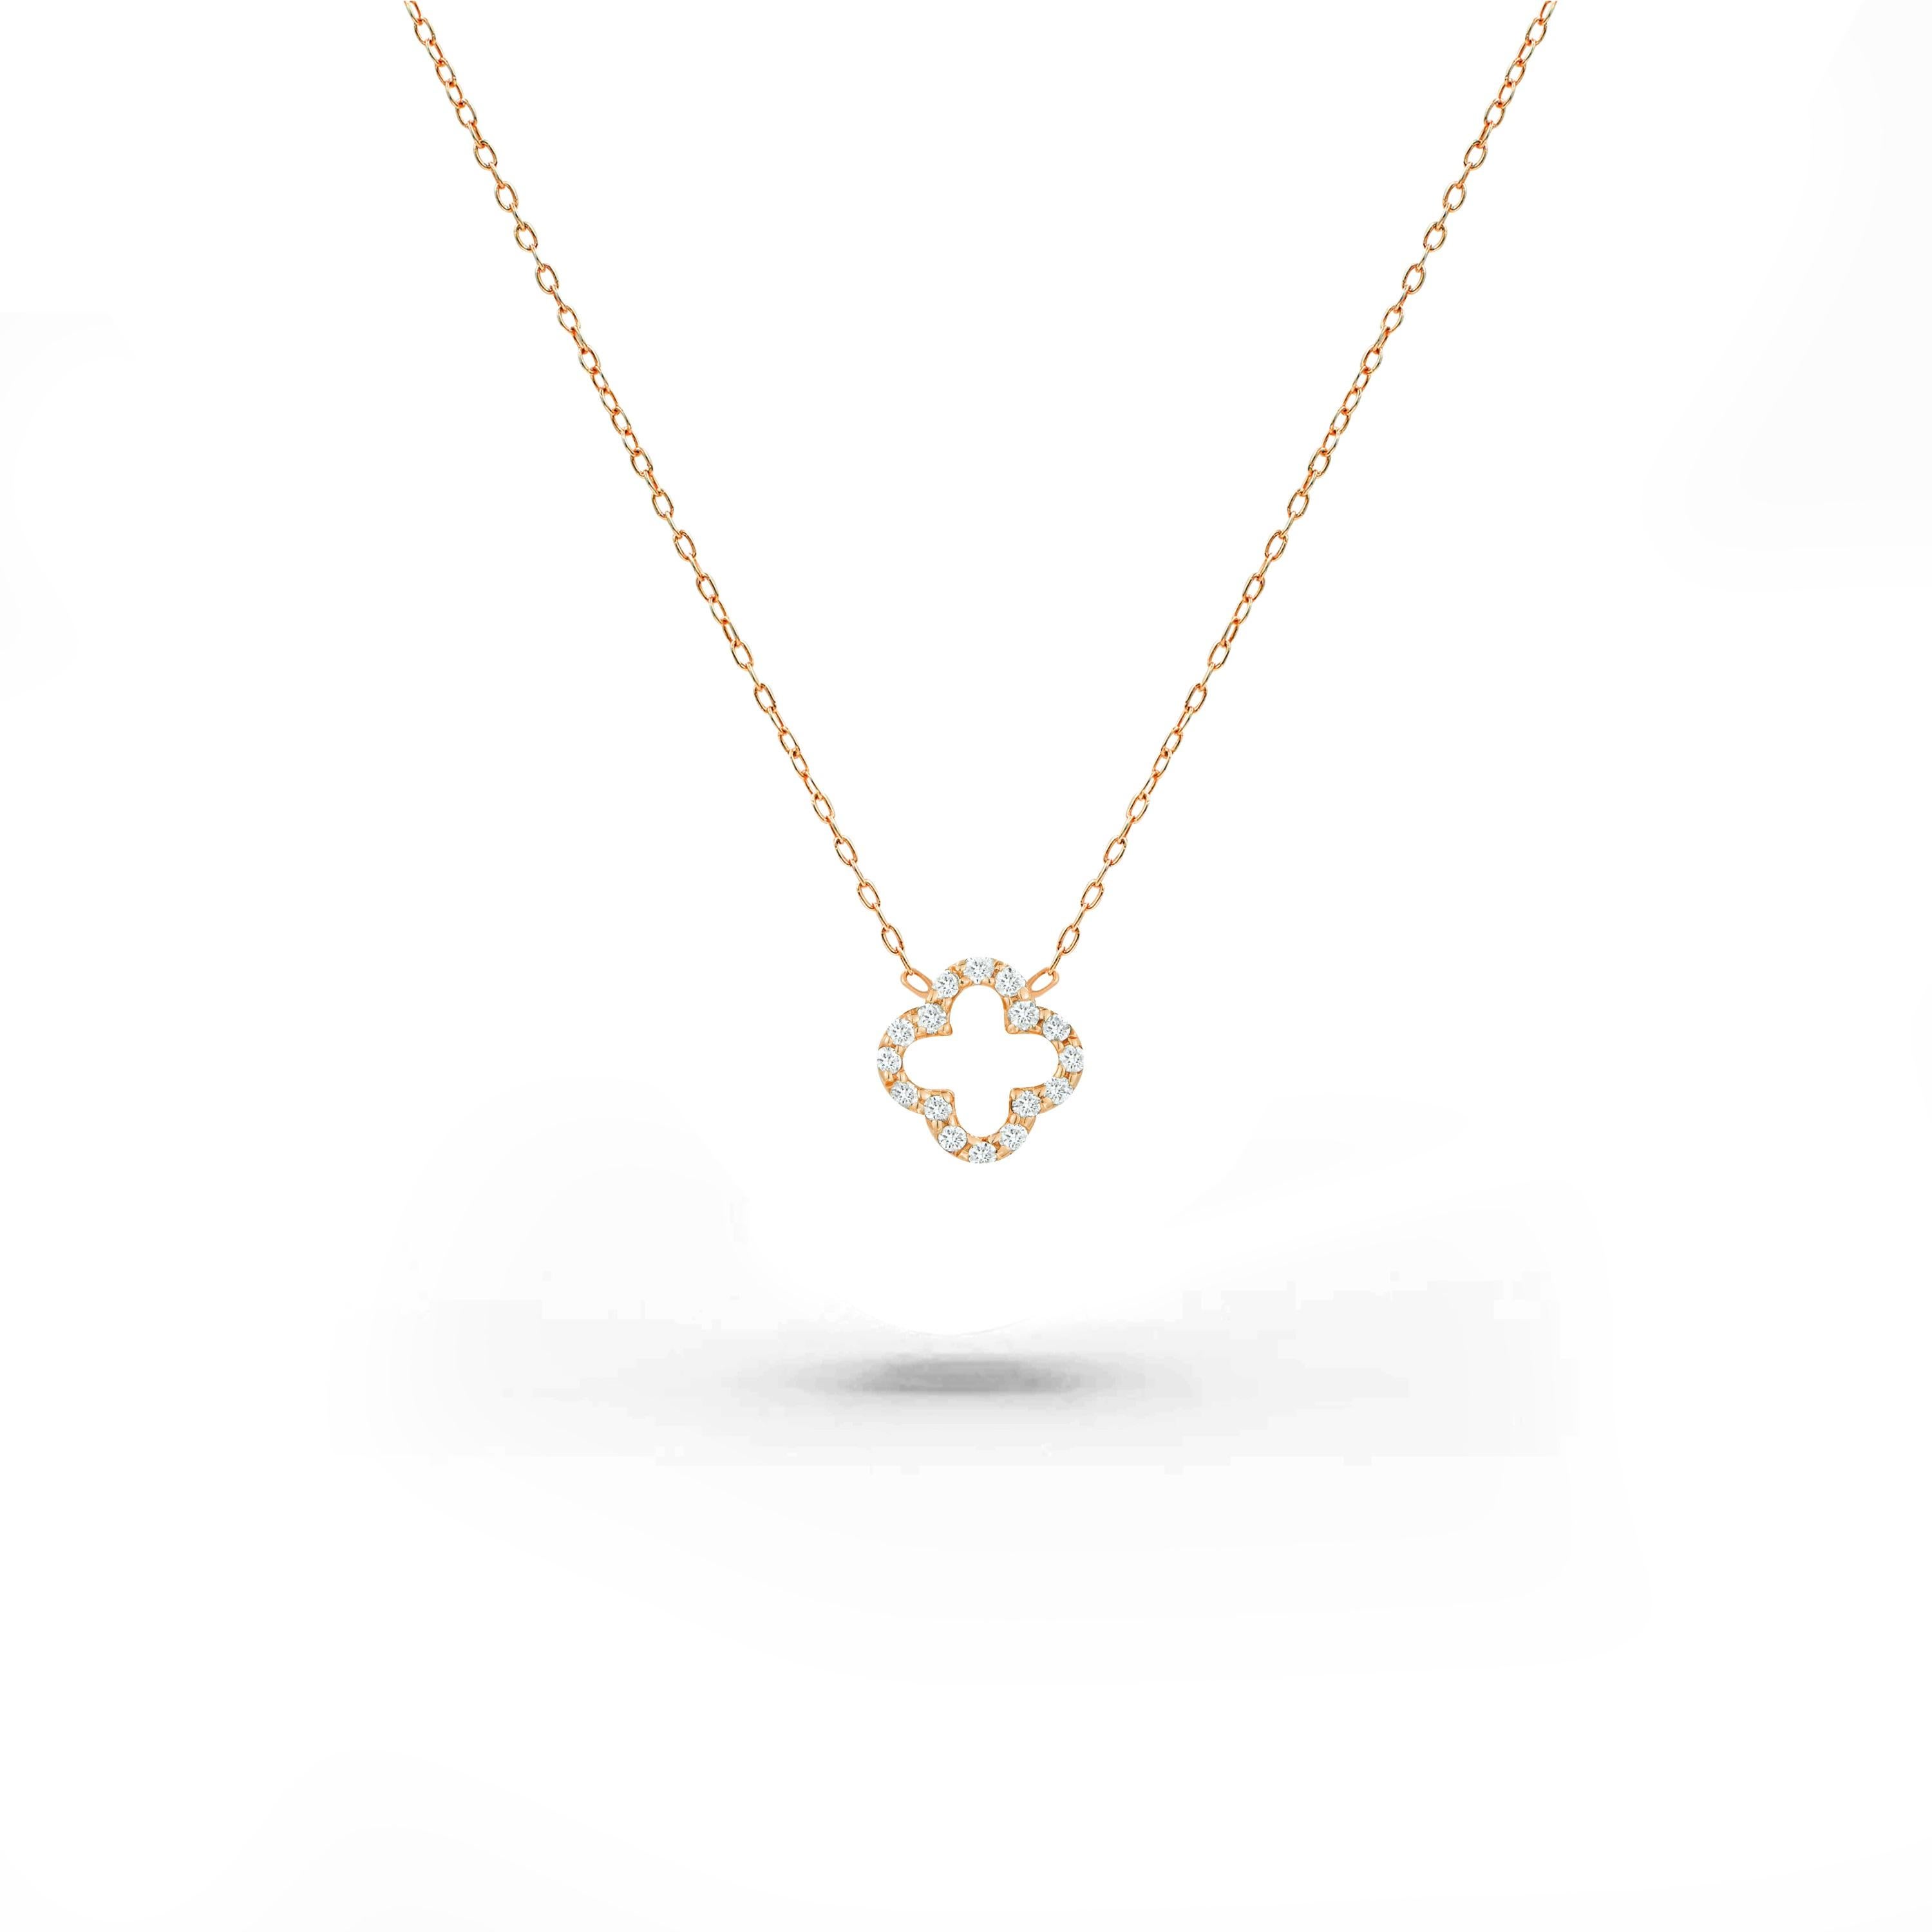 Zarte Minimal-Halskette aus massivem 18-karätigem Gold, erhältlich in drei Farben, Roségold / Weißgold / Gelbgold.

Natürlicher, echter, rund geschliffener Diamant - jeder Diamant wird von mir von Hand ausgewählt, um die Qualität zu gewährleisten,